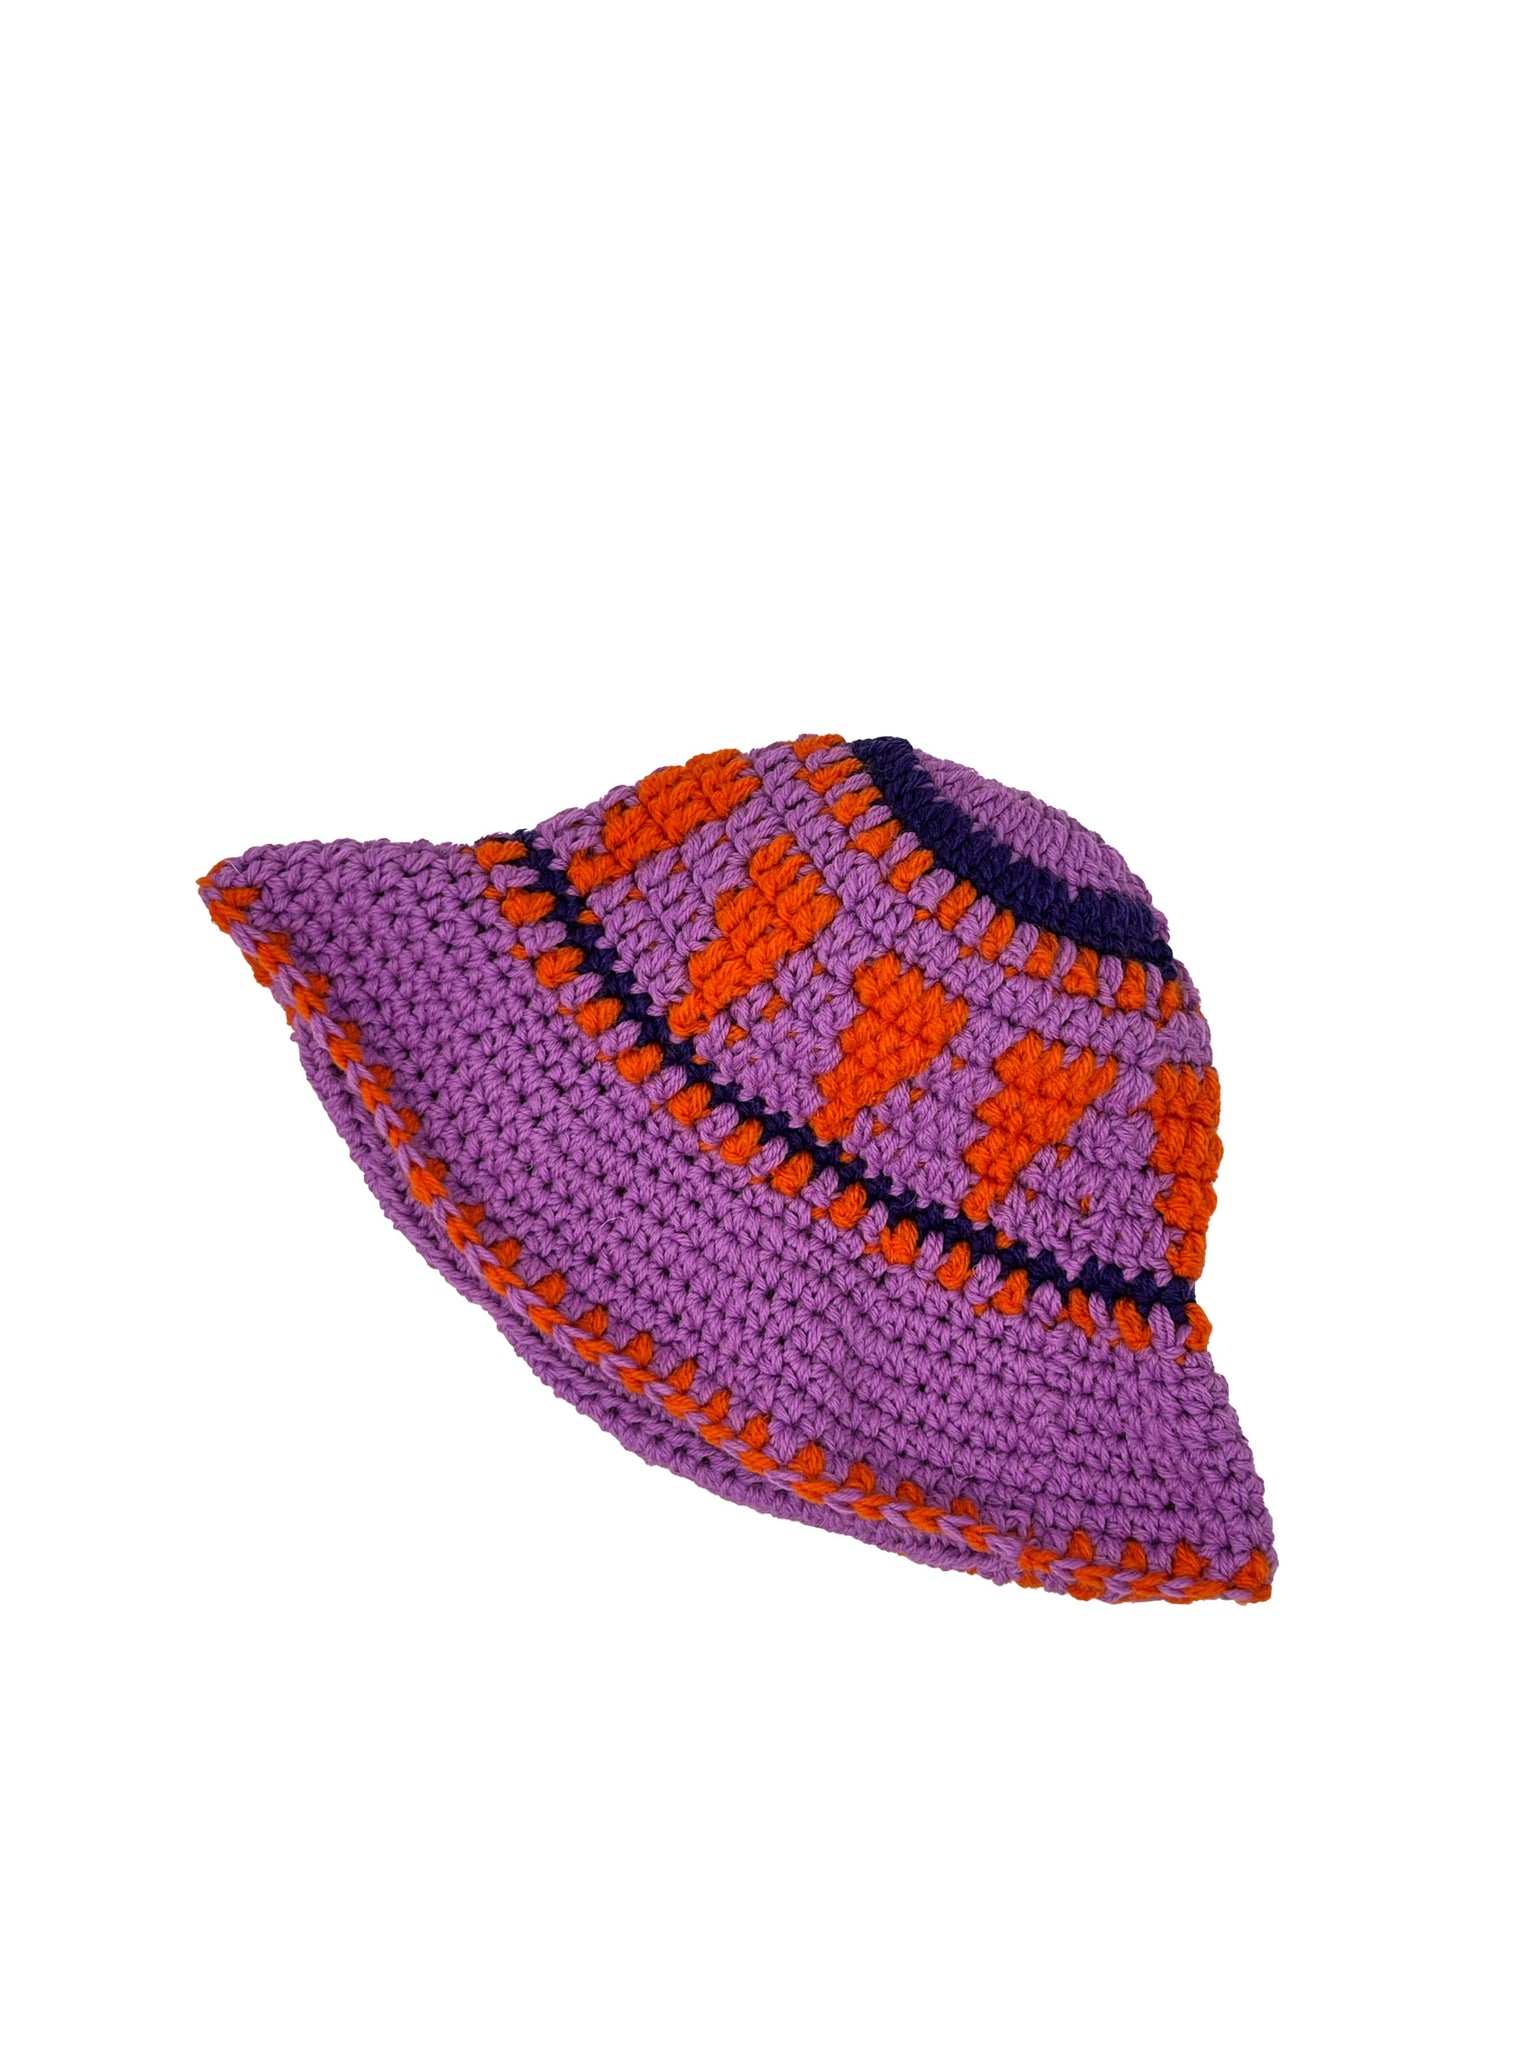 Lilac and orange ethnic wool crochet bucket hat